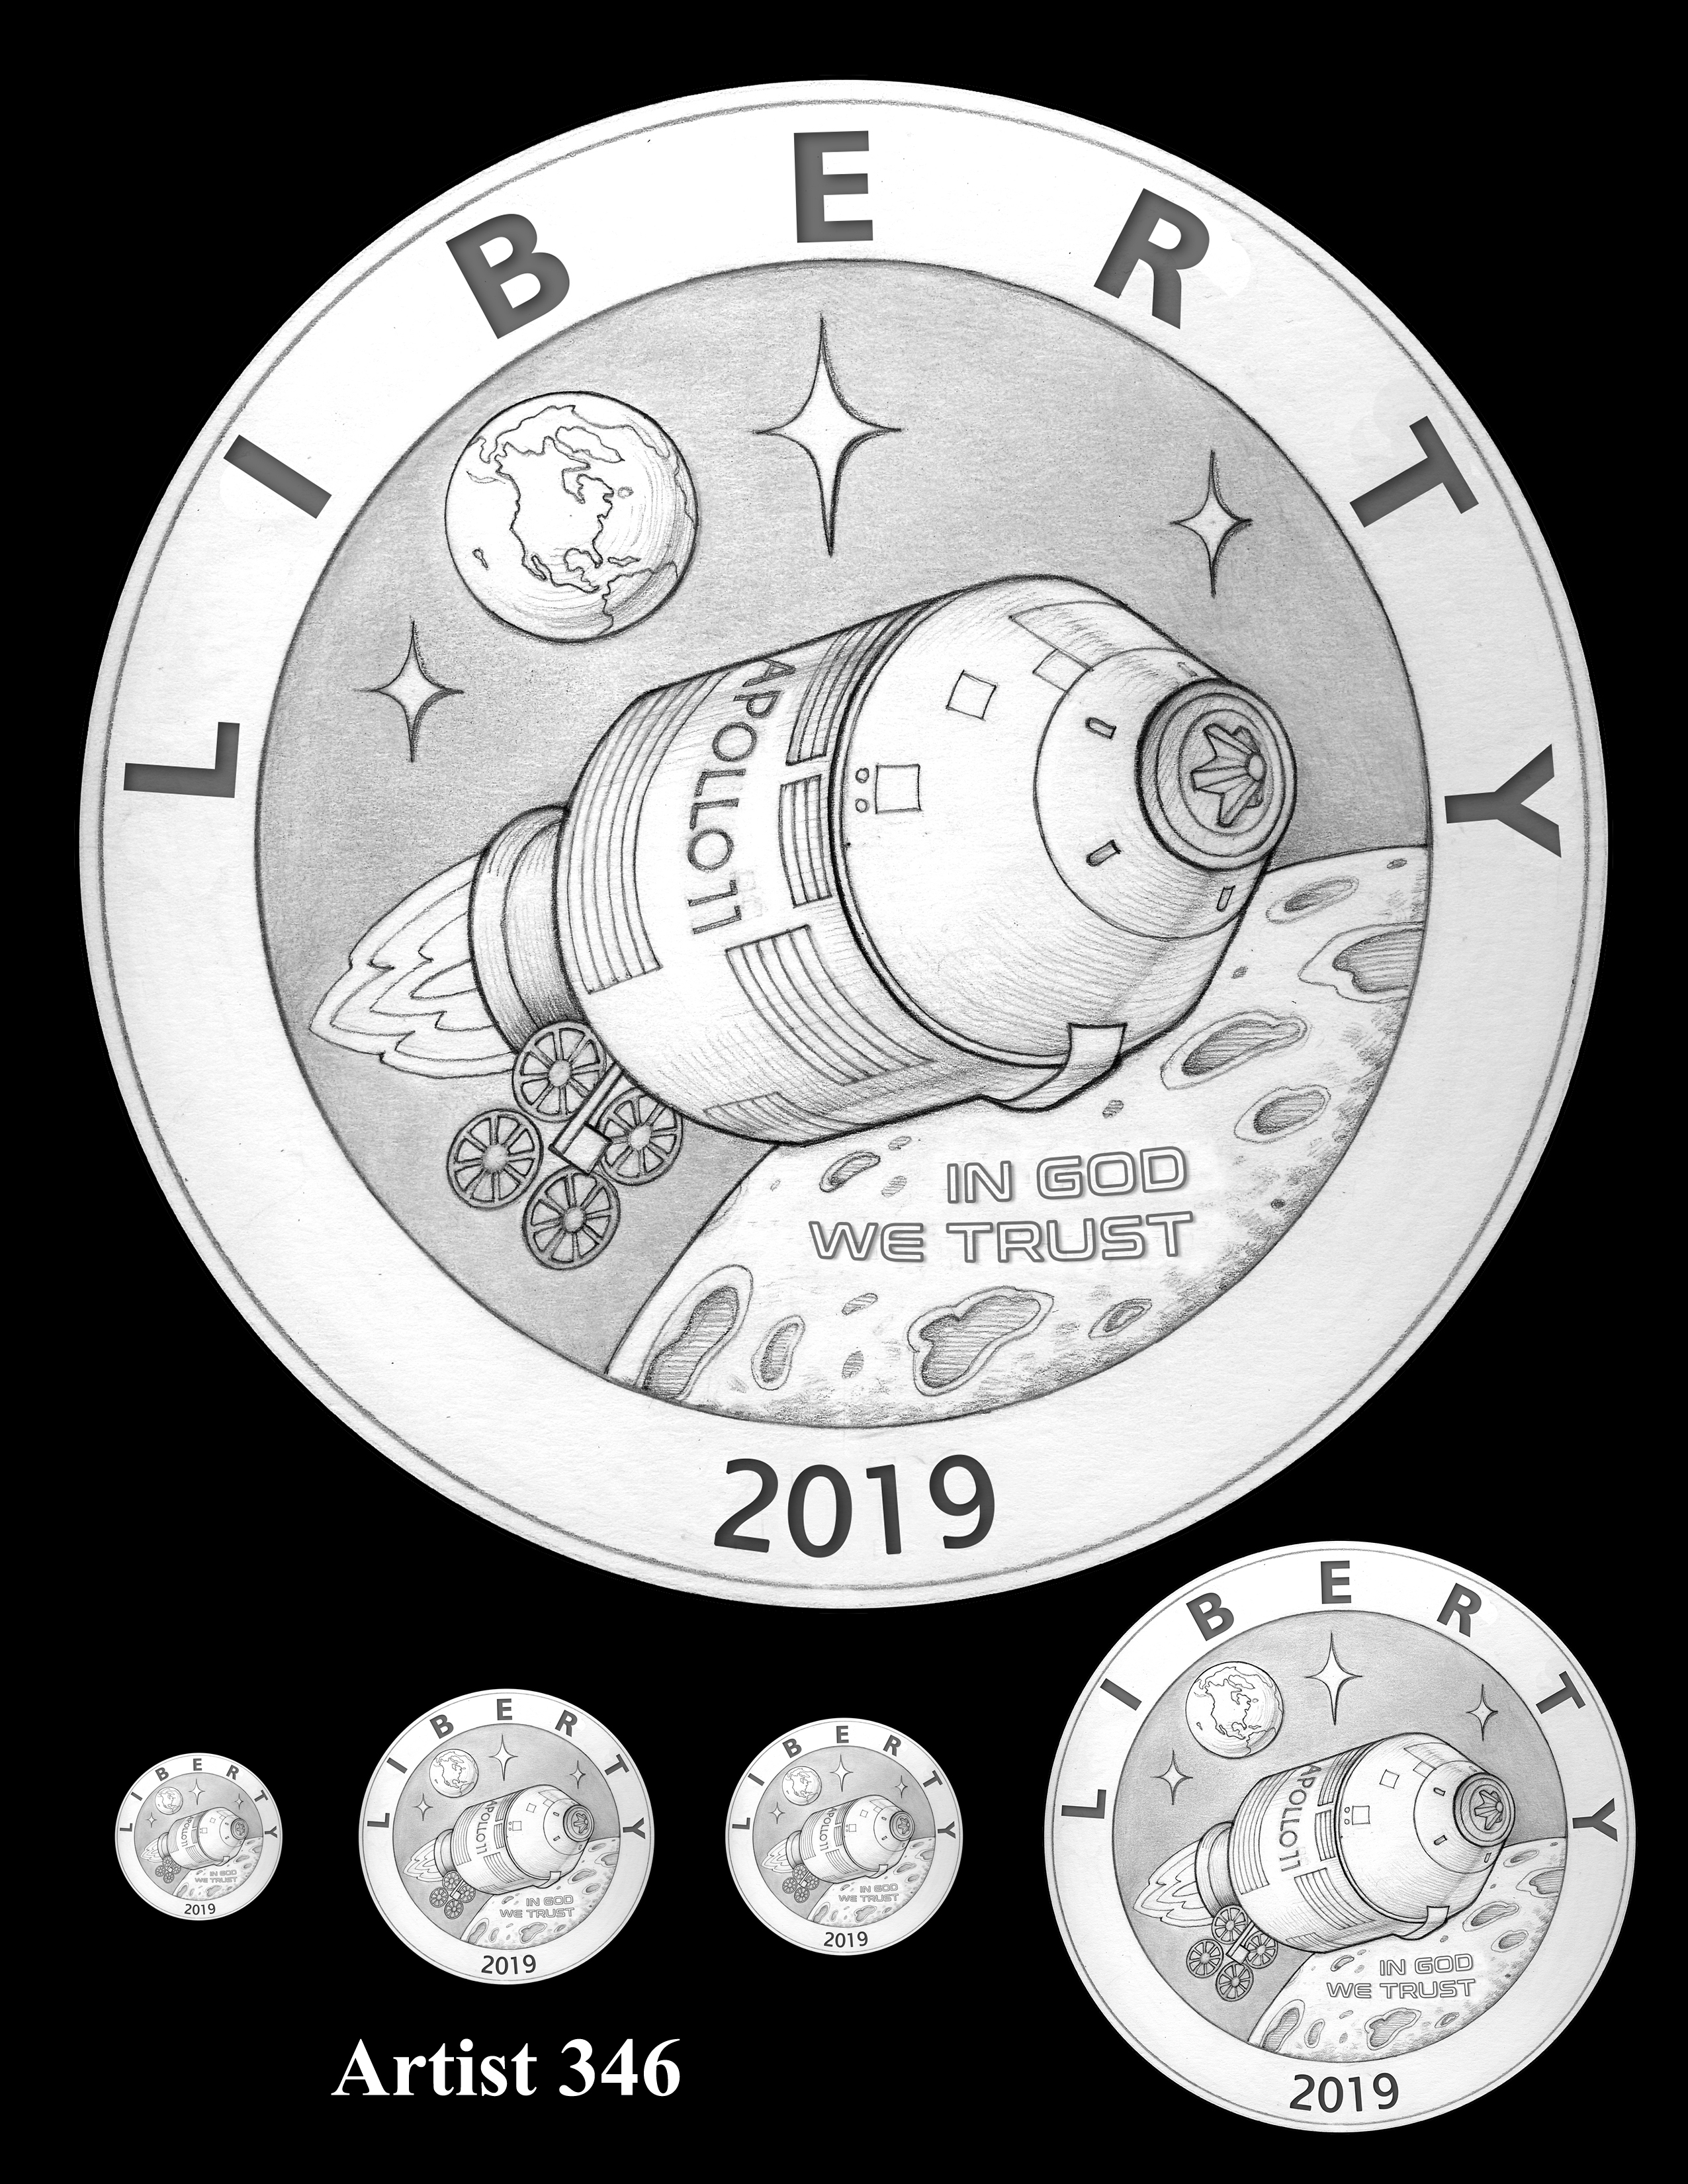 Artist 346 -- Apollo 11 50th Anniversary Commemorative Coin Obverse Design Competition